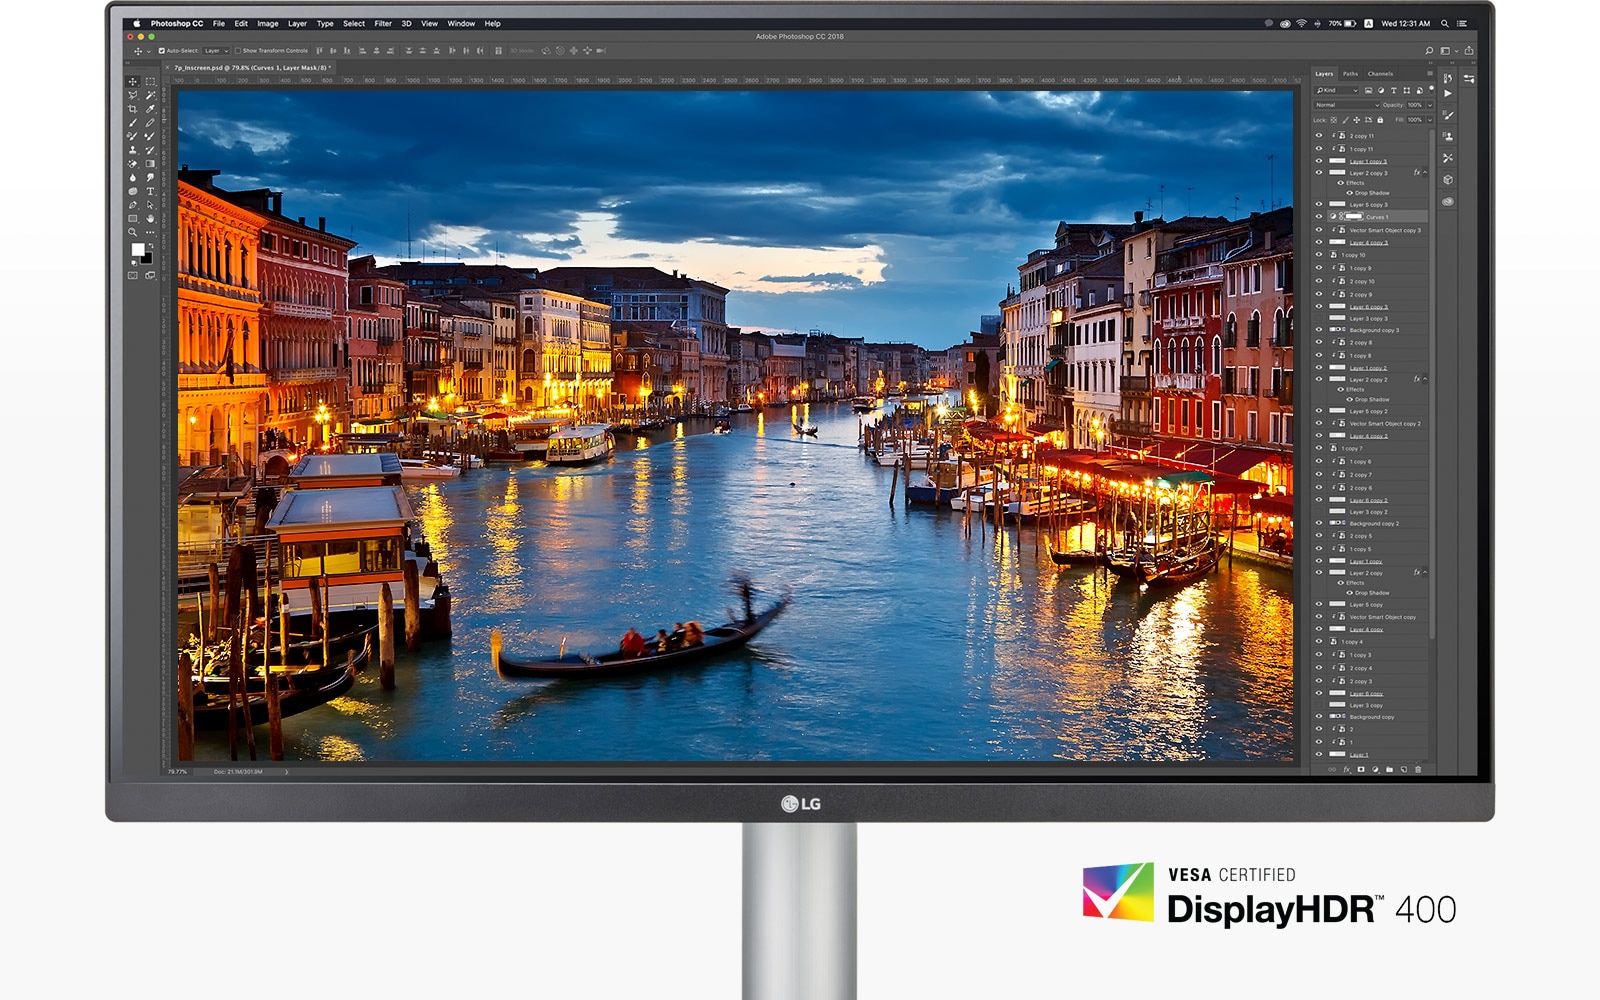 Монитор с VESA DisplayHDR ™ 400 обеспечивает впечатляющее визуальное погружение